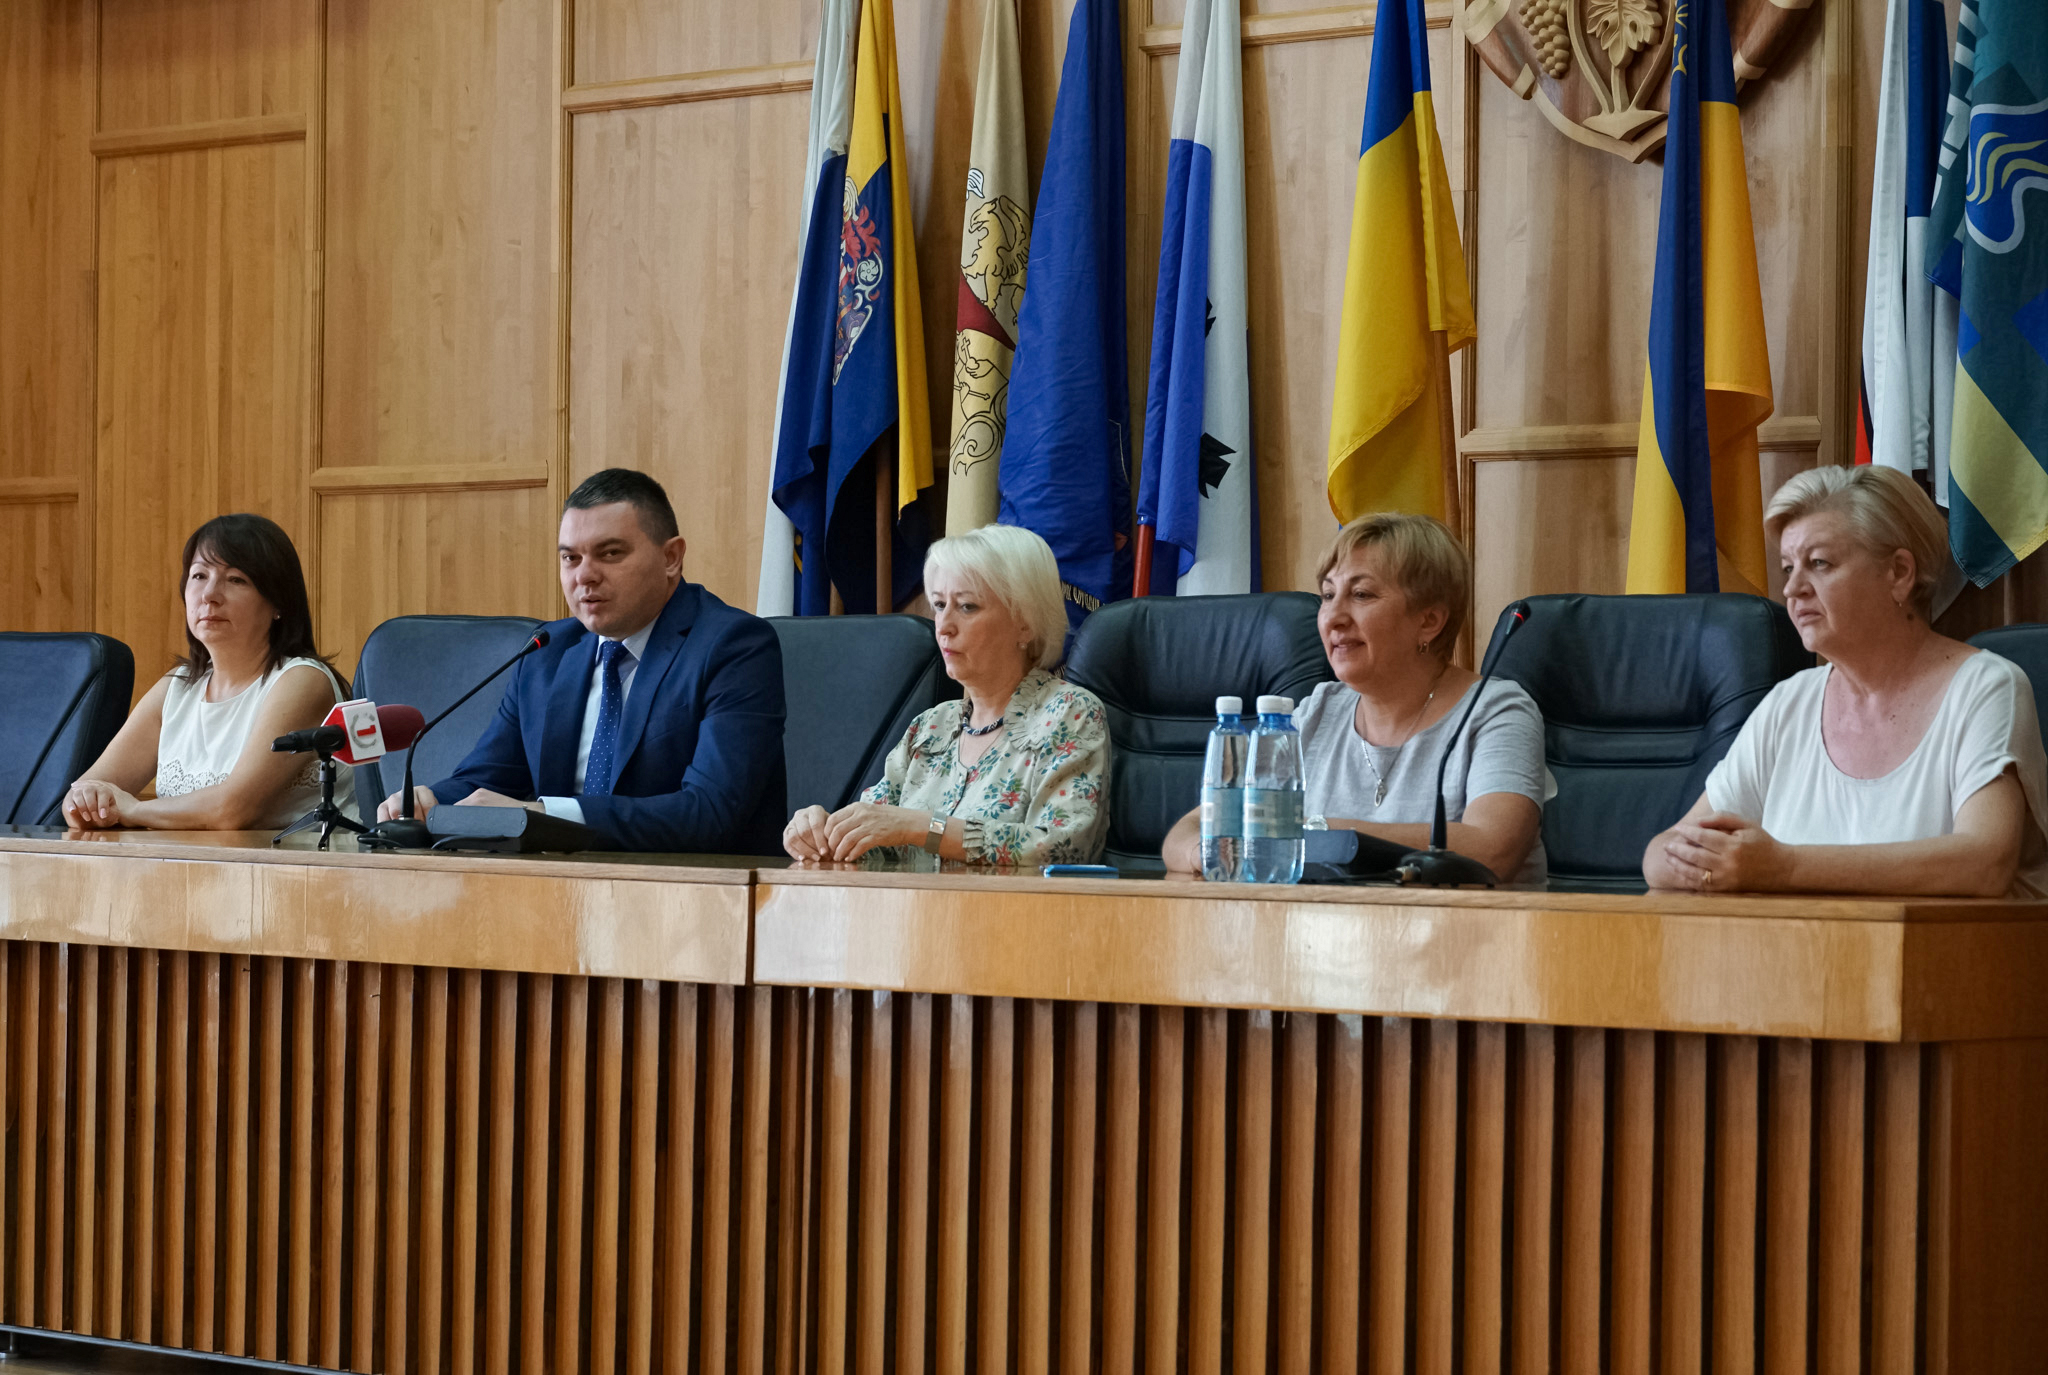 Семінар для сімейних лікарів Закарпатської області на тему «Супровід паліативних хворих» відбувся сьогодні в Ужгородській міській раді